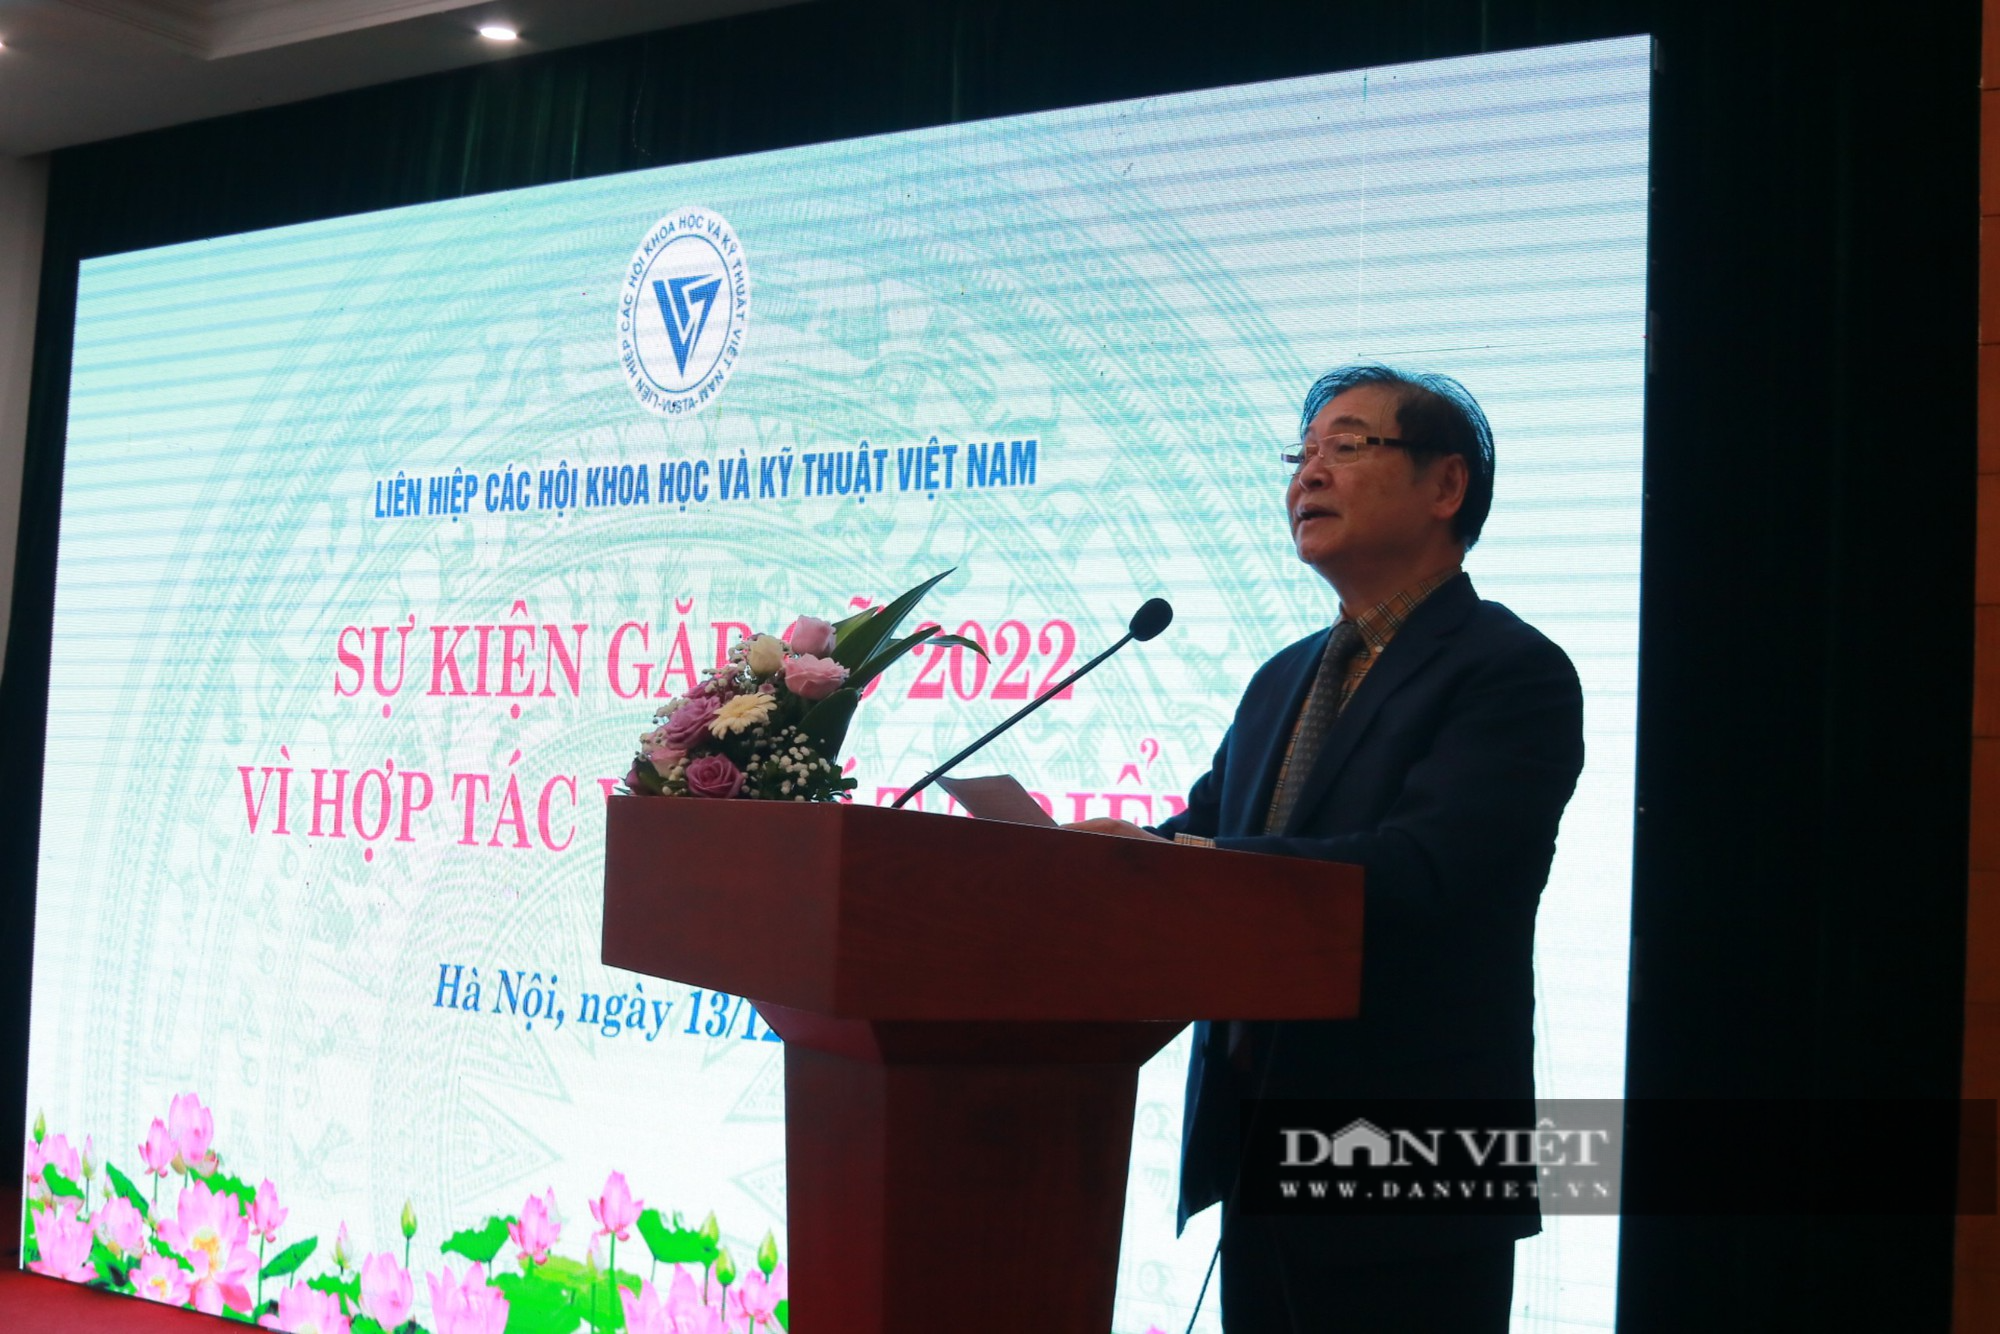 Liên hiệp các Hội Khoa học và Kỹ thuật Việt Nam đẩy mạnh phát triển khoa học, công nghệ - Ảnh 2.